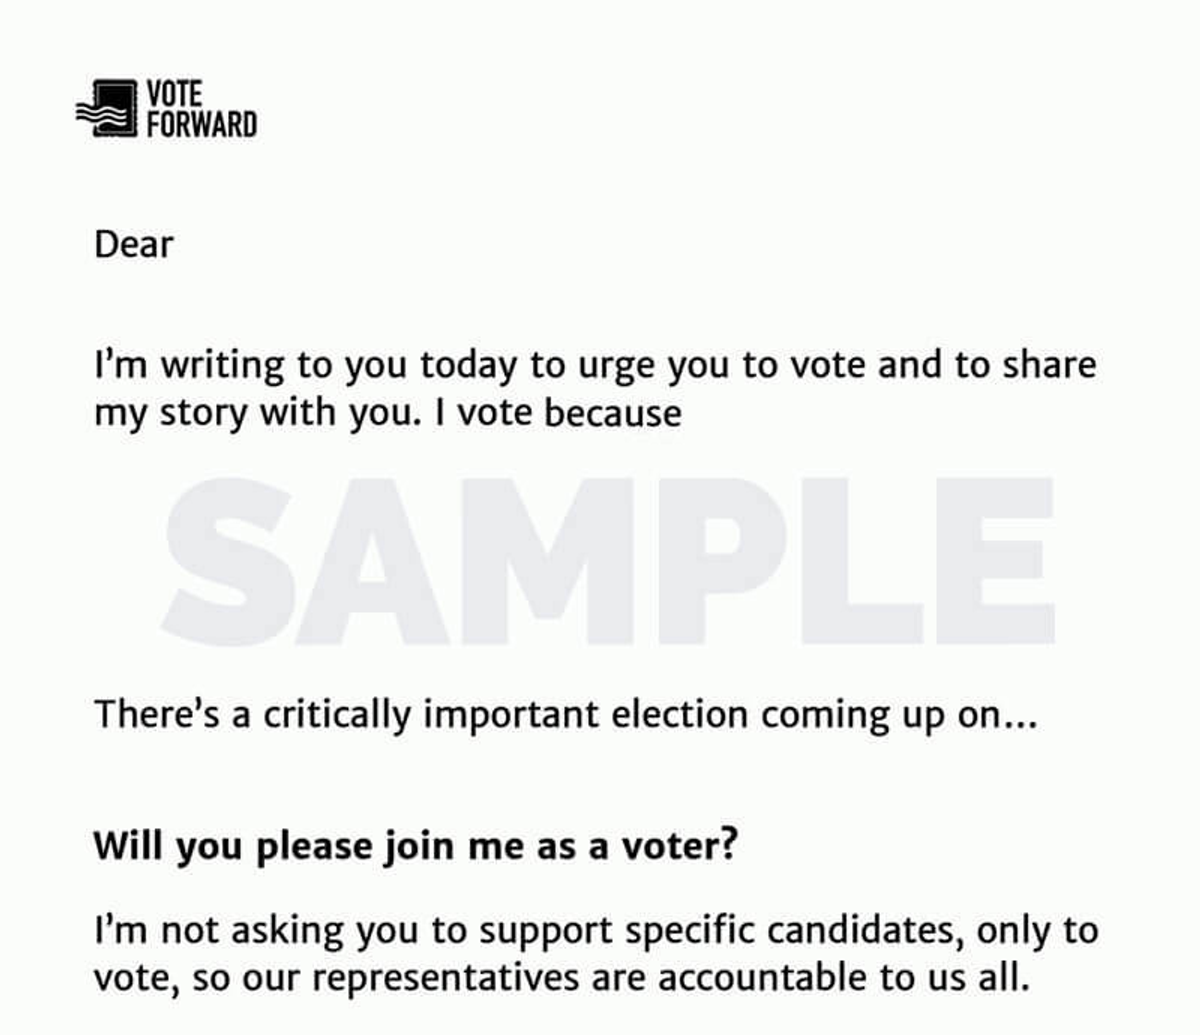 Sample Vote Forward Letter